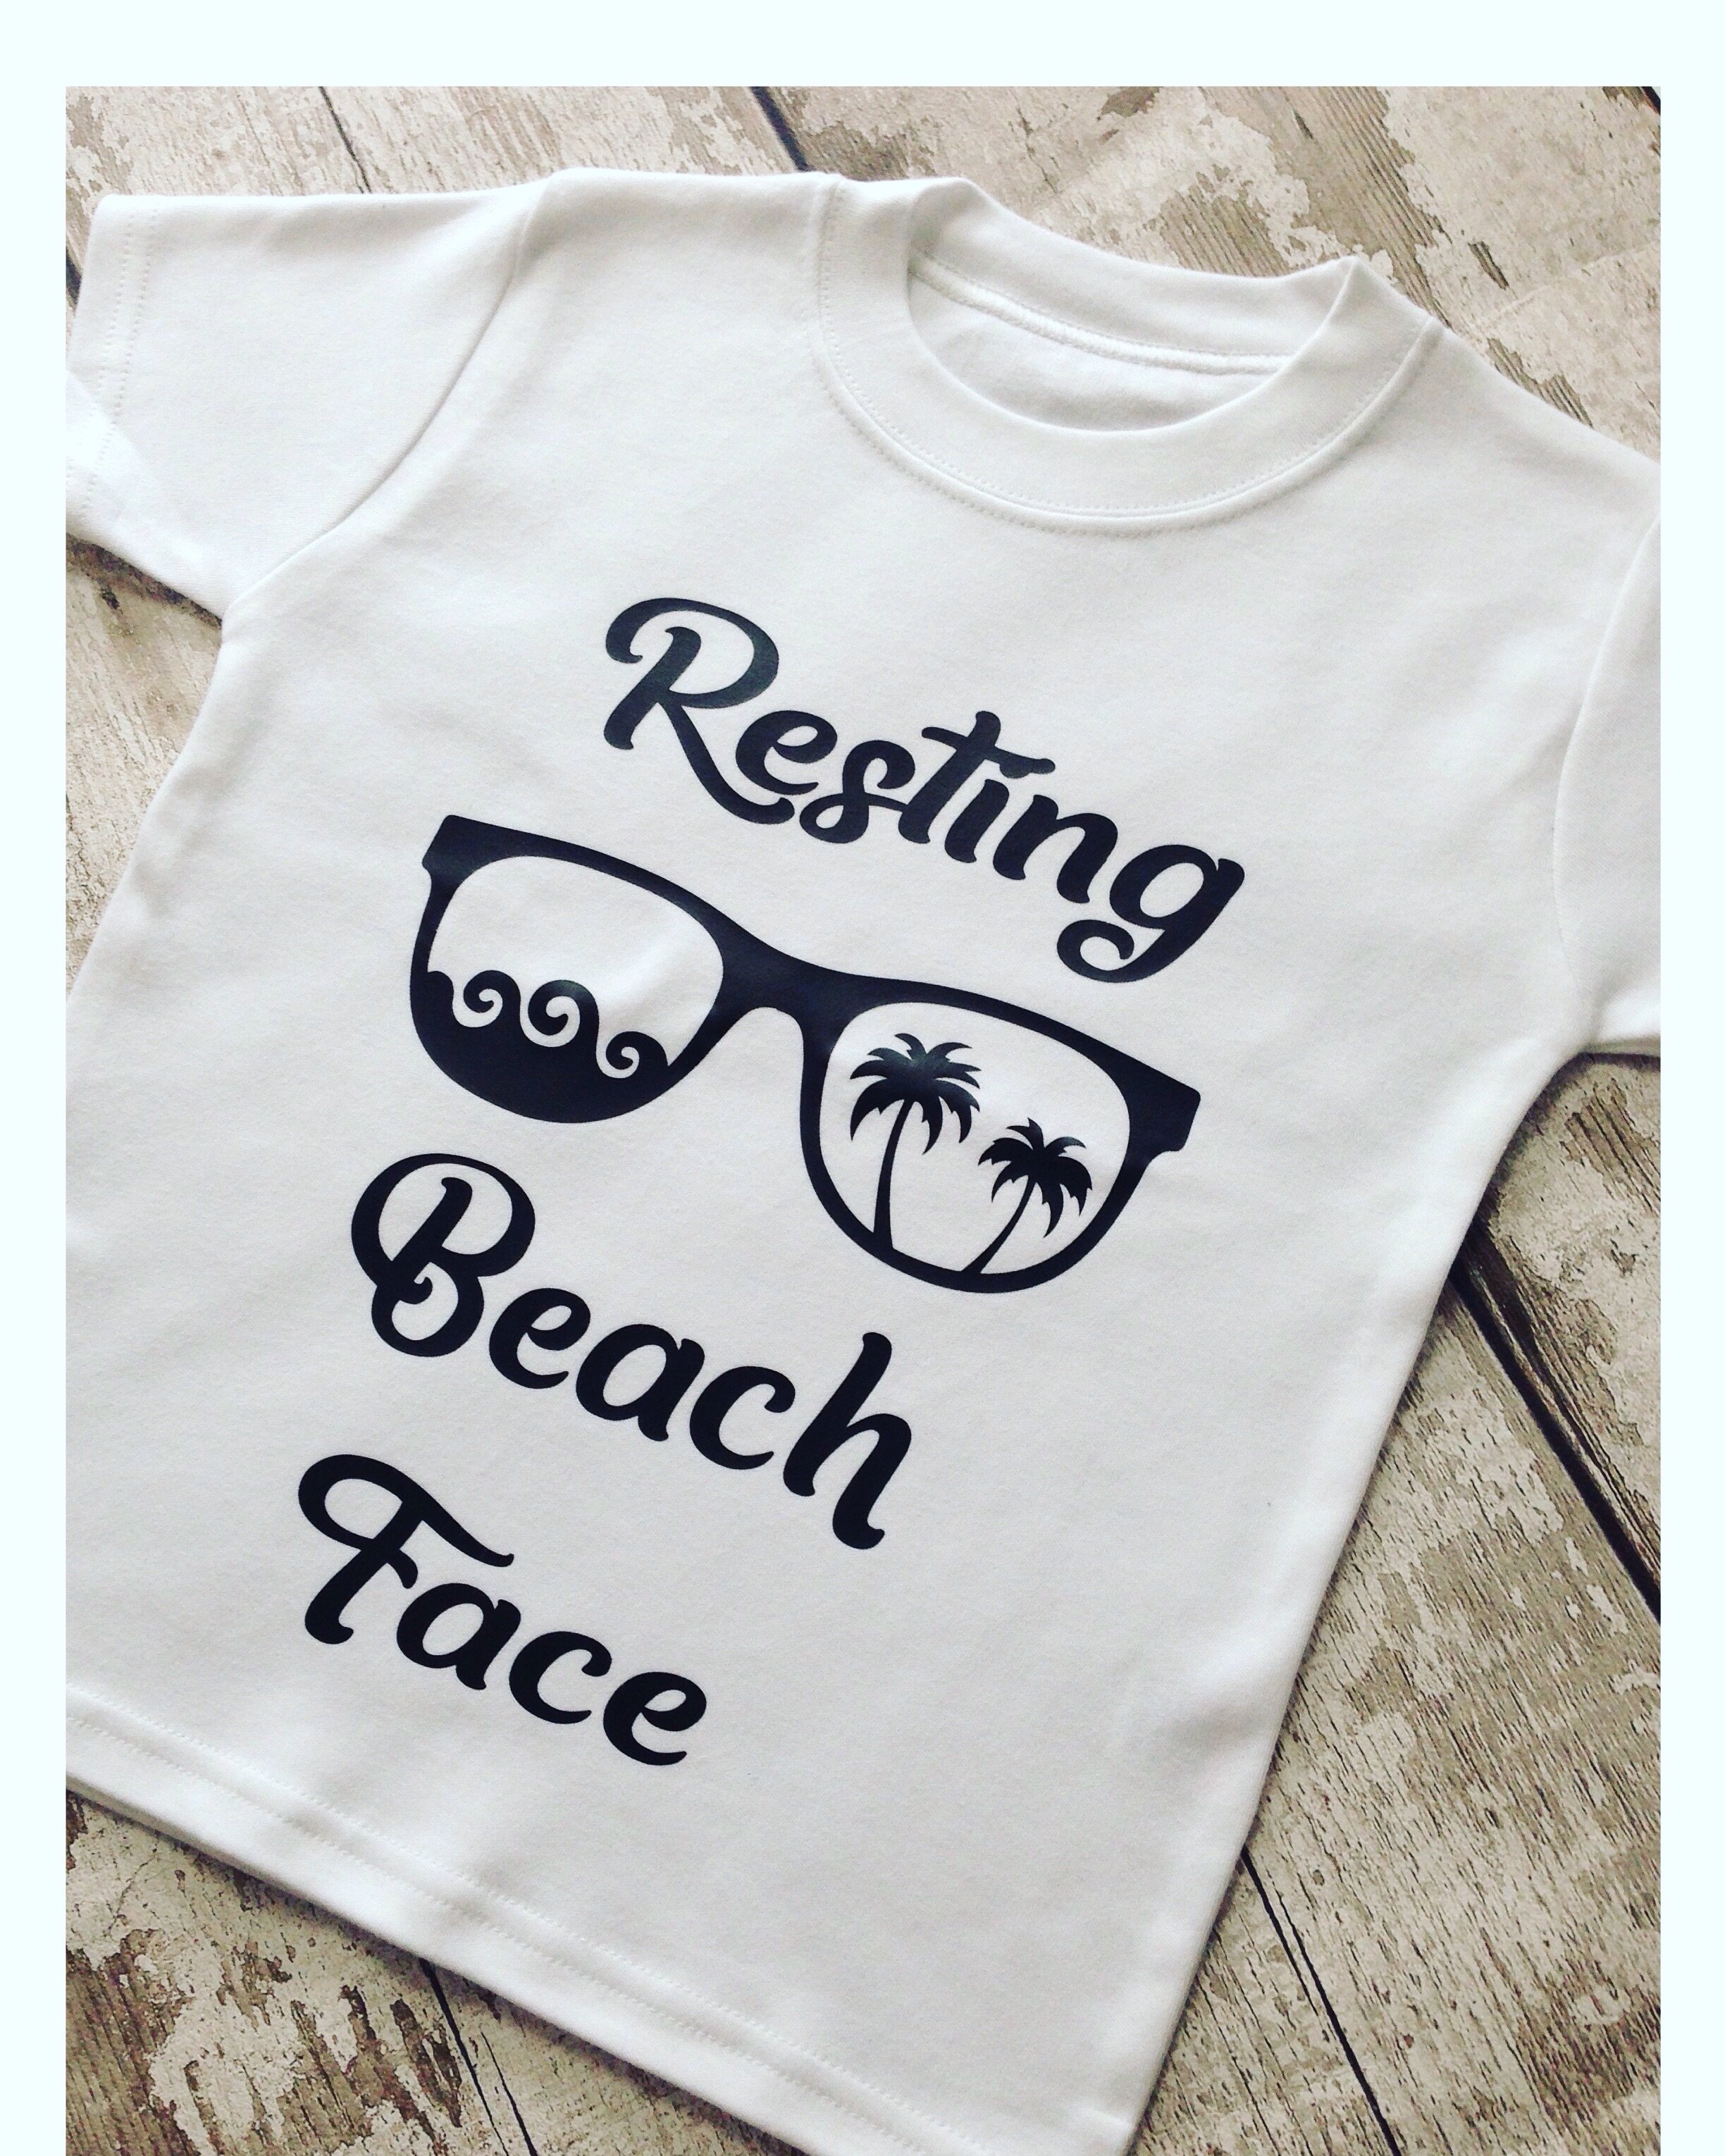 Resting beach face t shirt